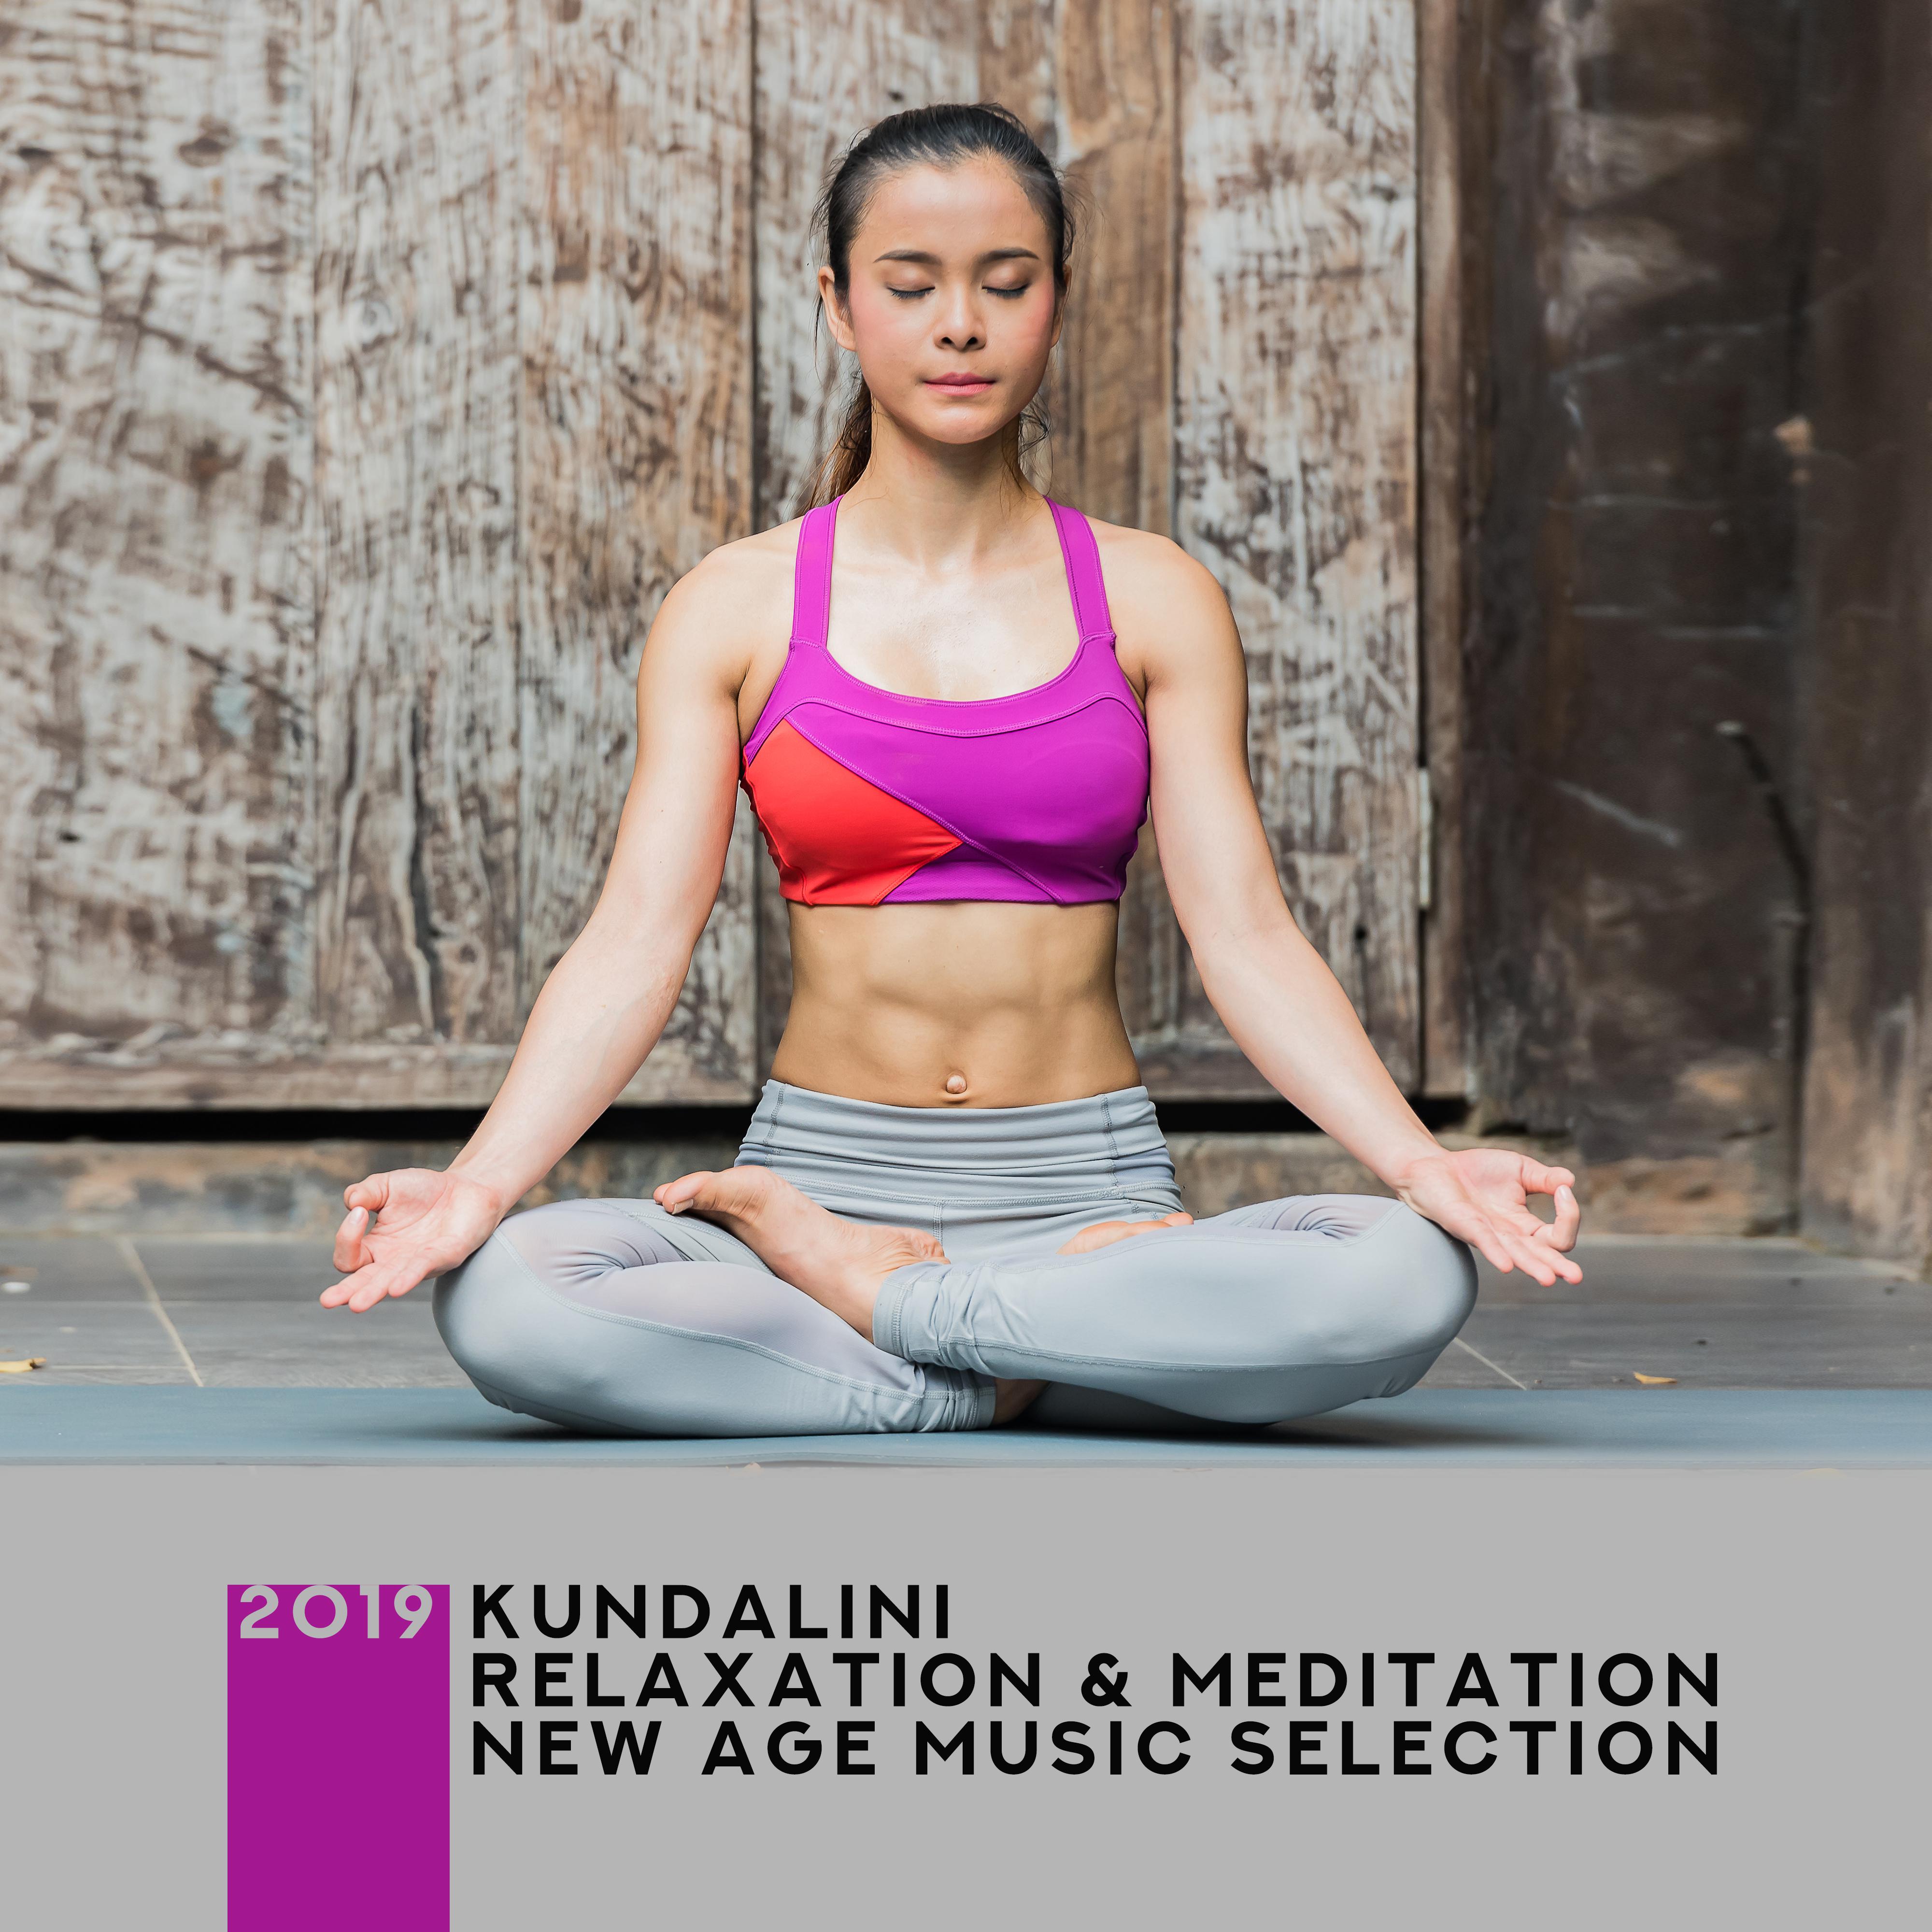 2019 Kundalini Relaxation & Meditation New Age Music Selection